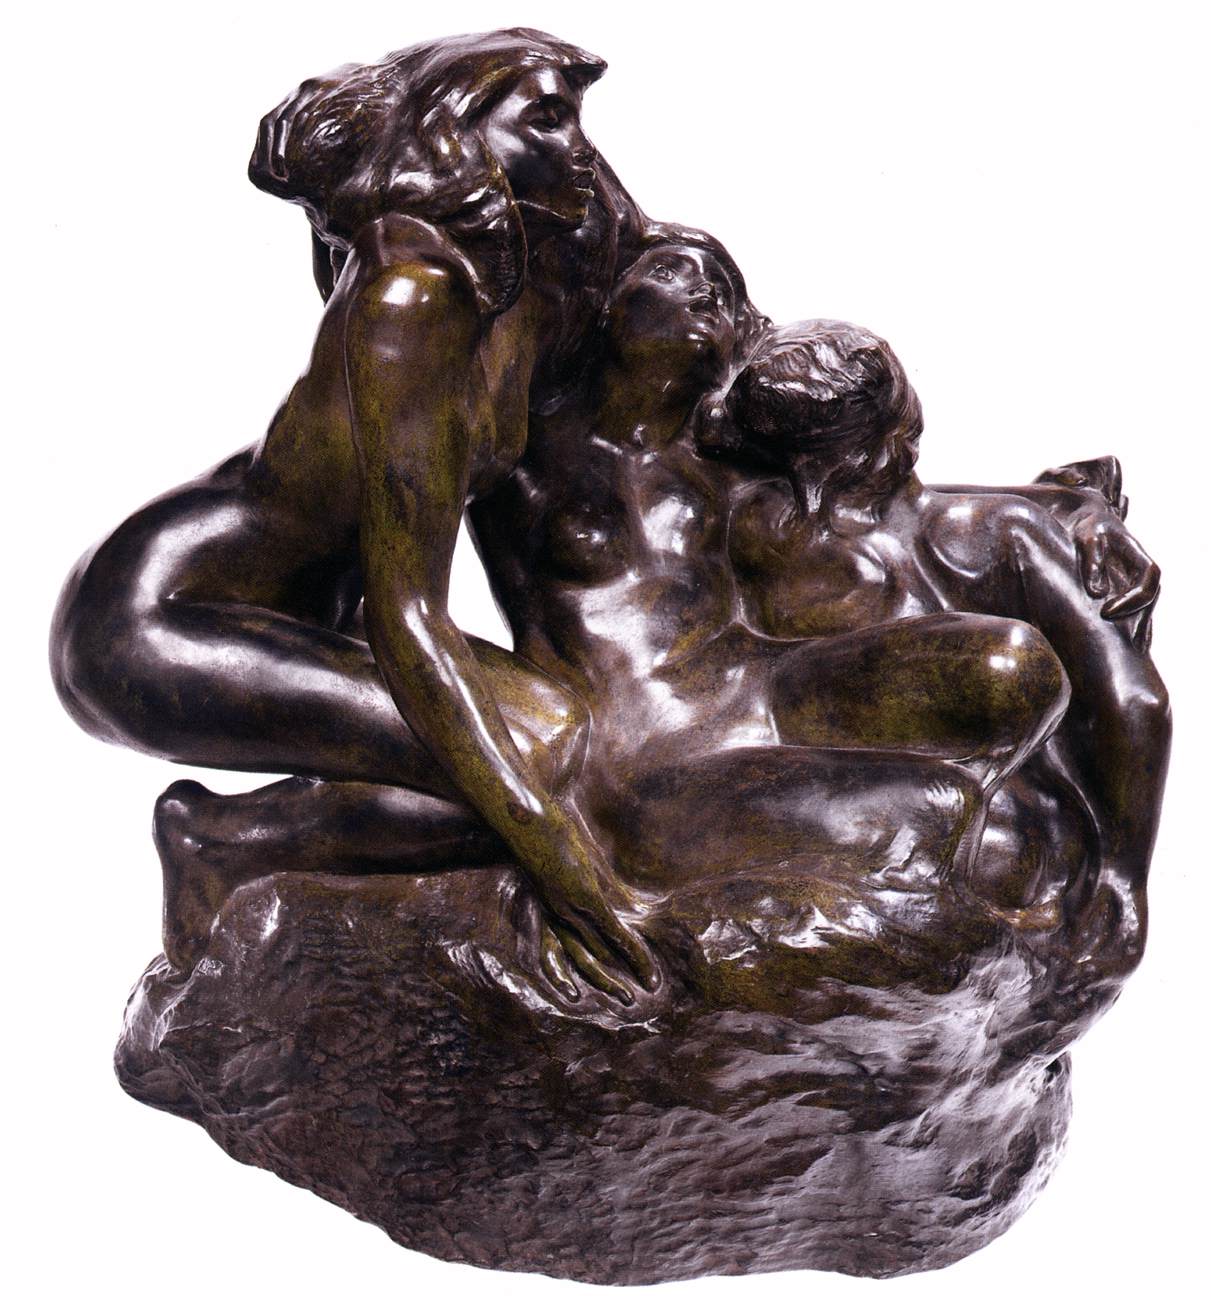 Auguste+Rodin-1840-1917 (270).jpg